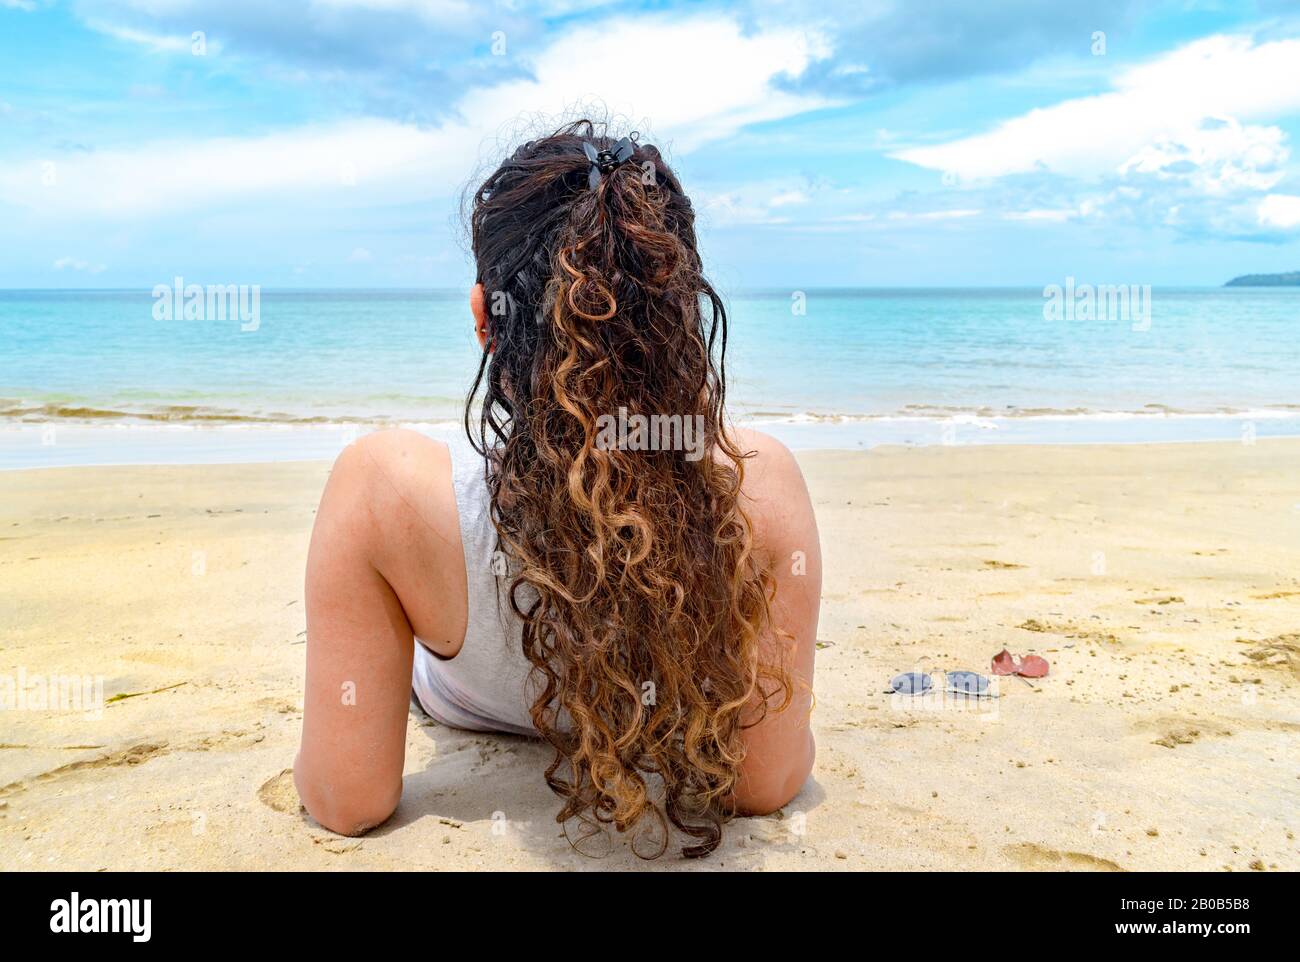 Vue arrière d'un modèle féminin attrayant profitant de sa plage de vacances. Elle a une belle coiffure avec des cheveux colorés et une peau impeccable se bronzant Banque D'Images